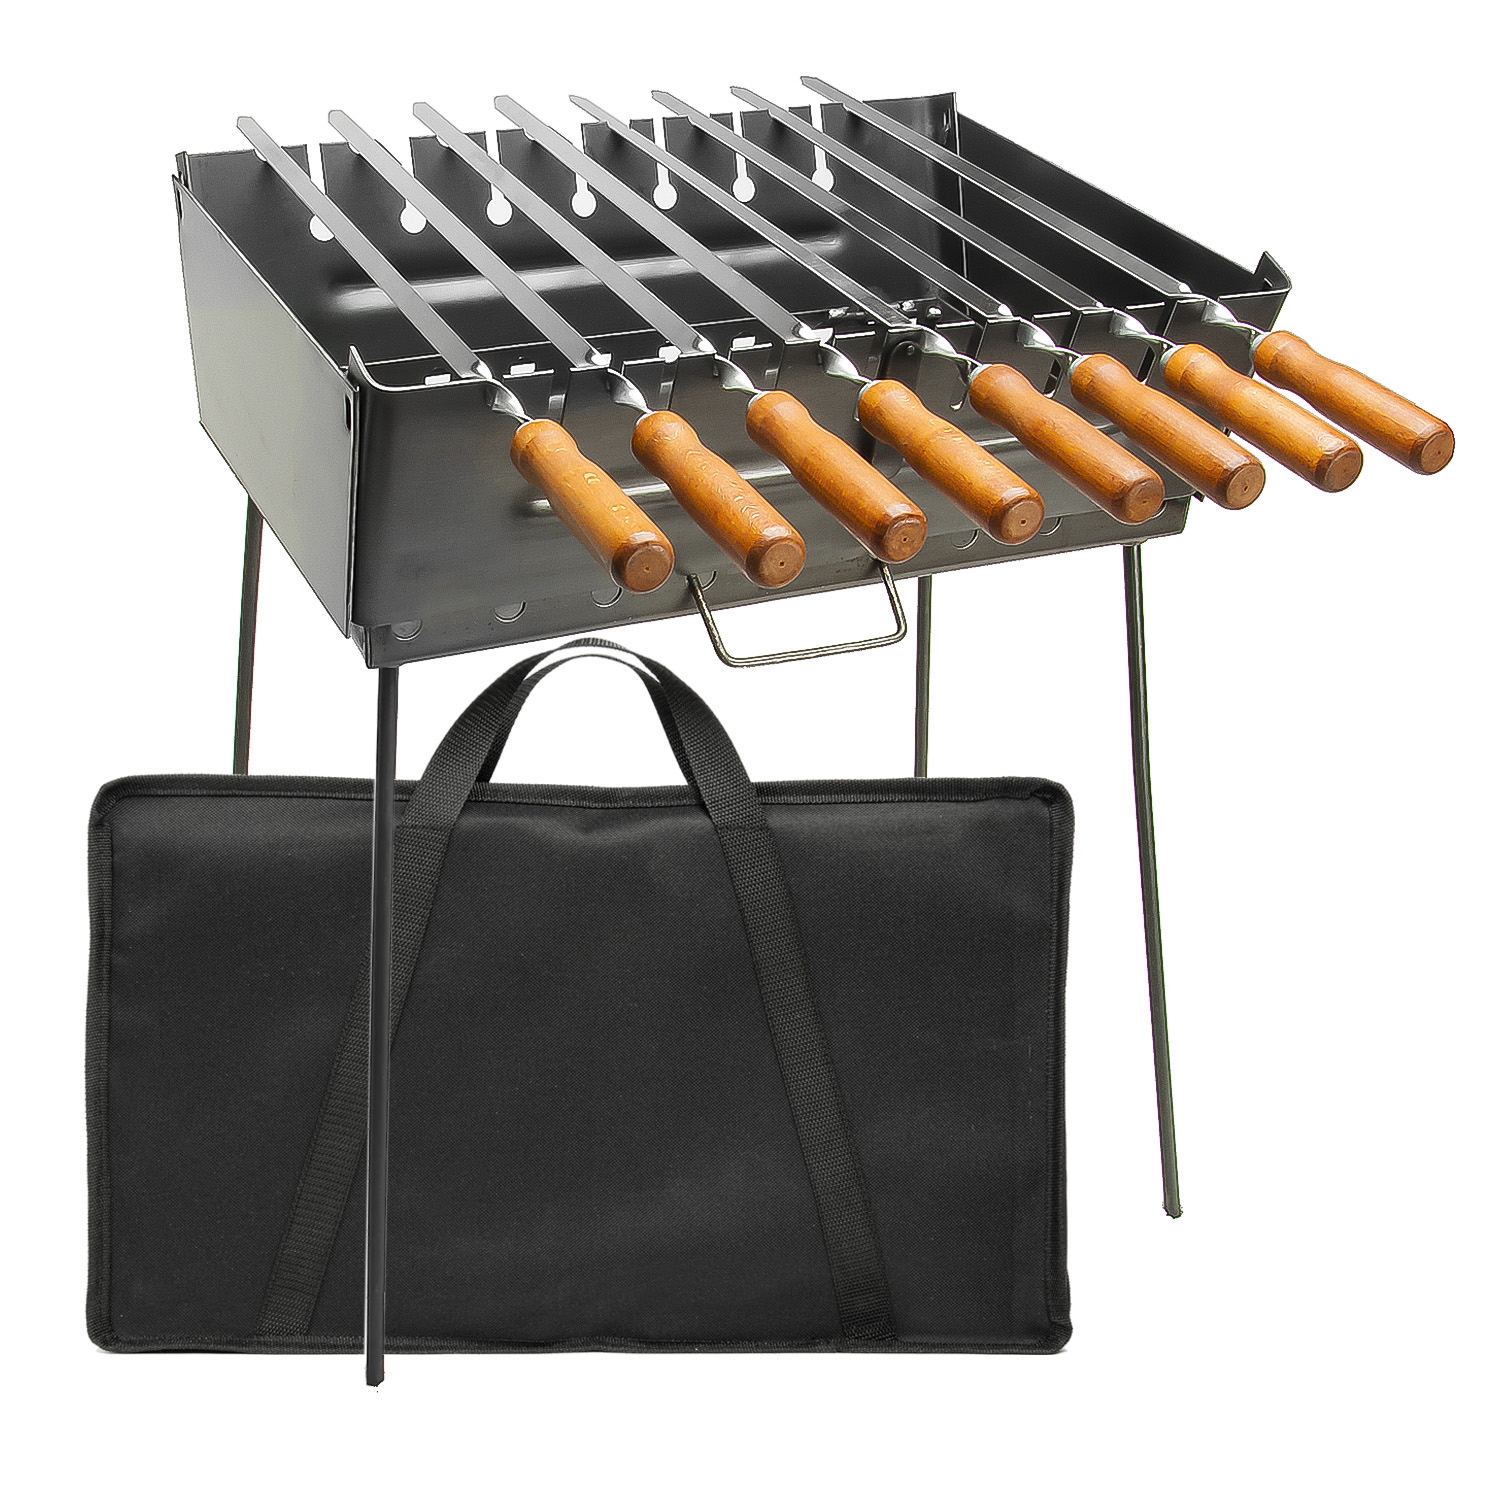 

Набор раскладной мангал чемодан на 8 шампуров с чехлом комплект 8 шампуров нержавеющая сталь 650/12.5/2 мм деревянная ручка орех ручная работа